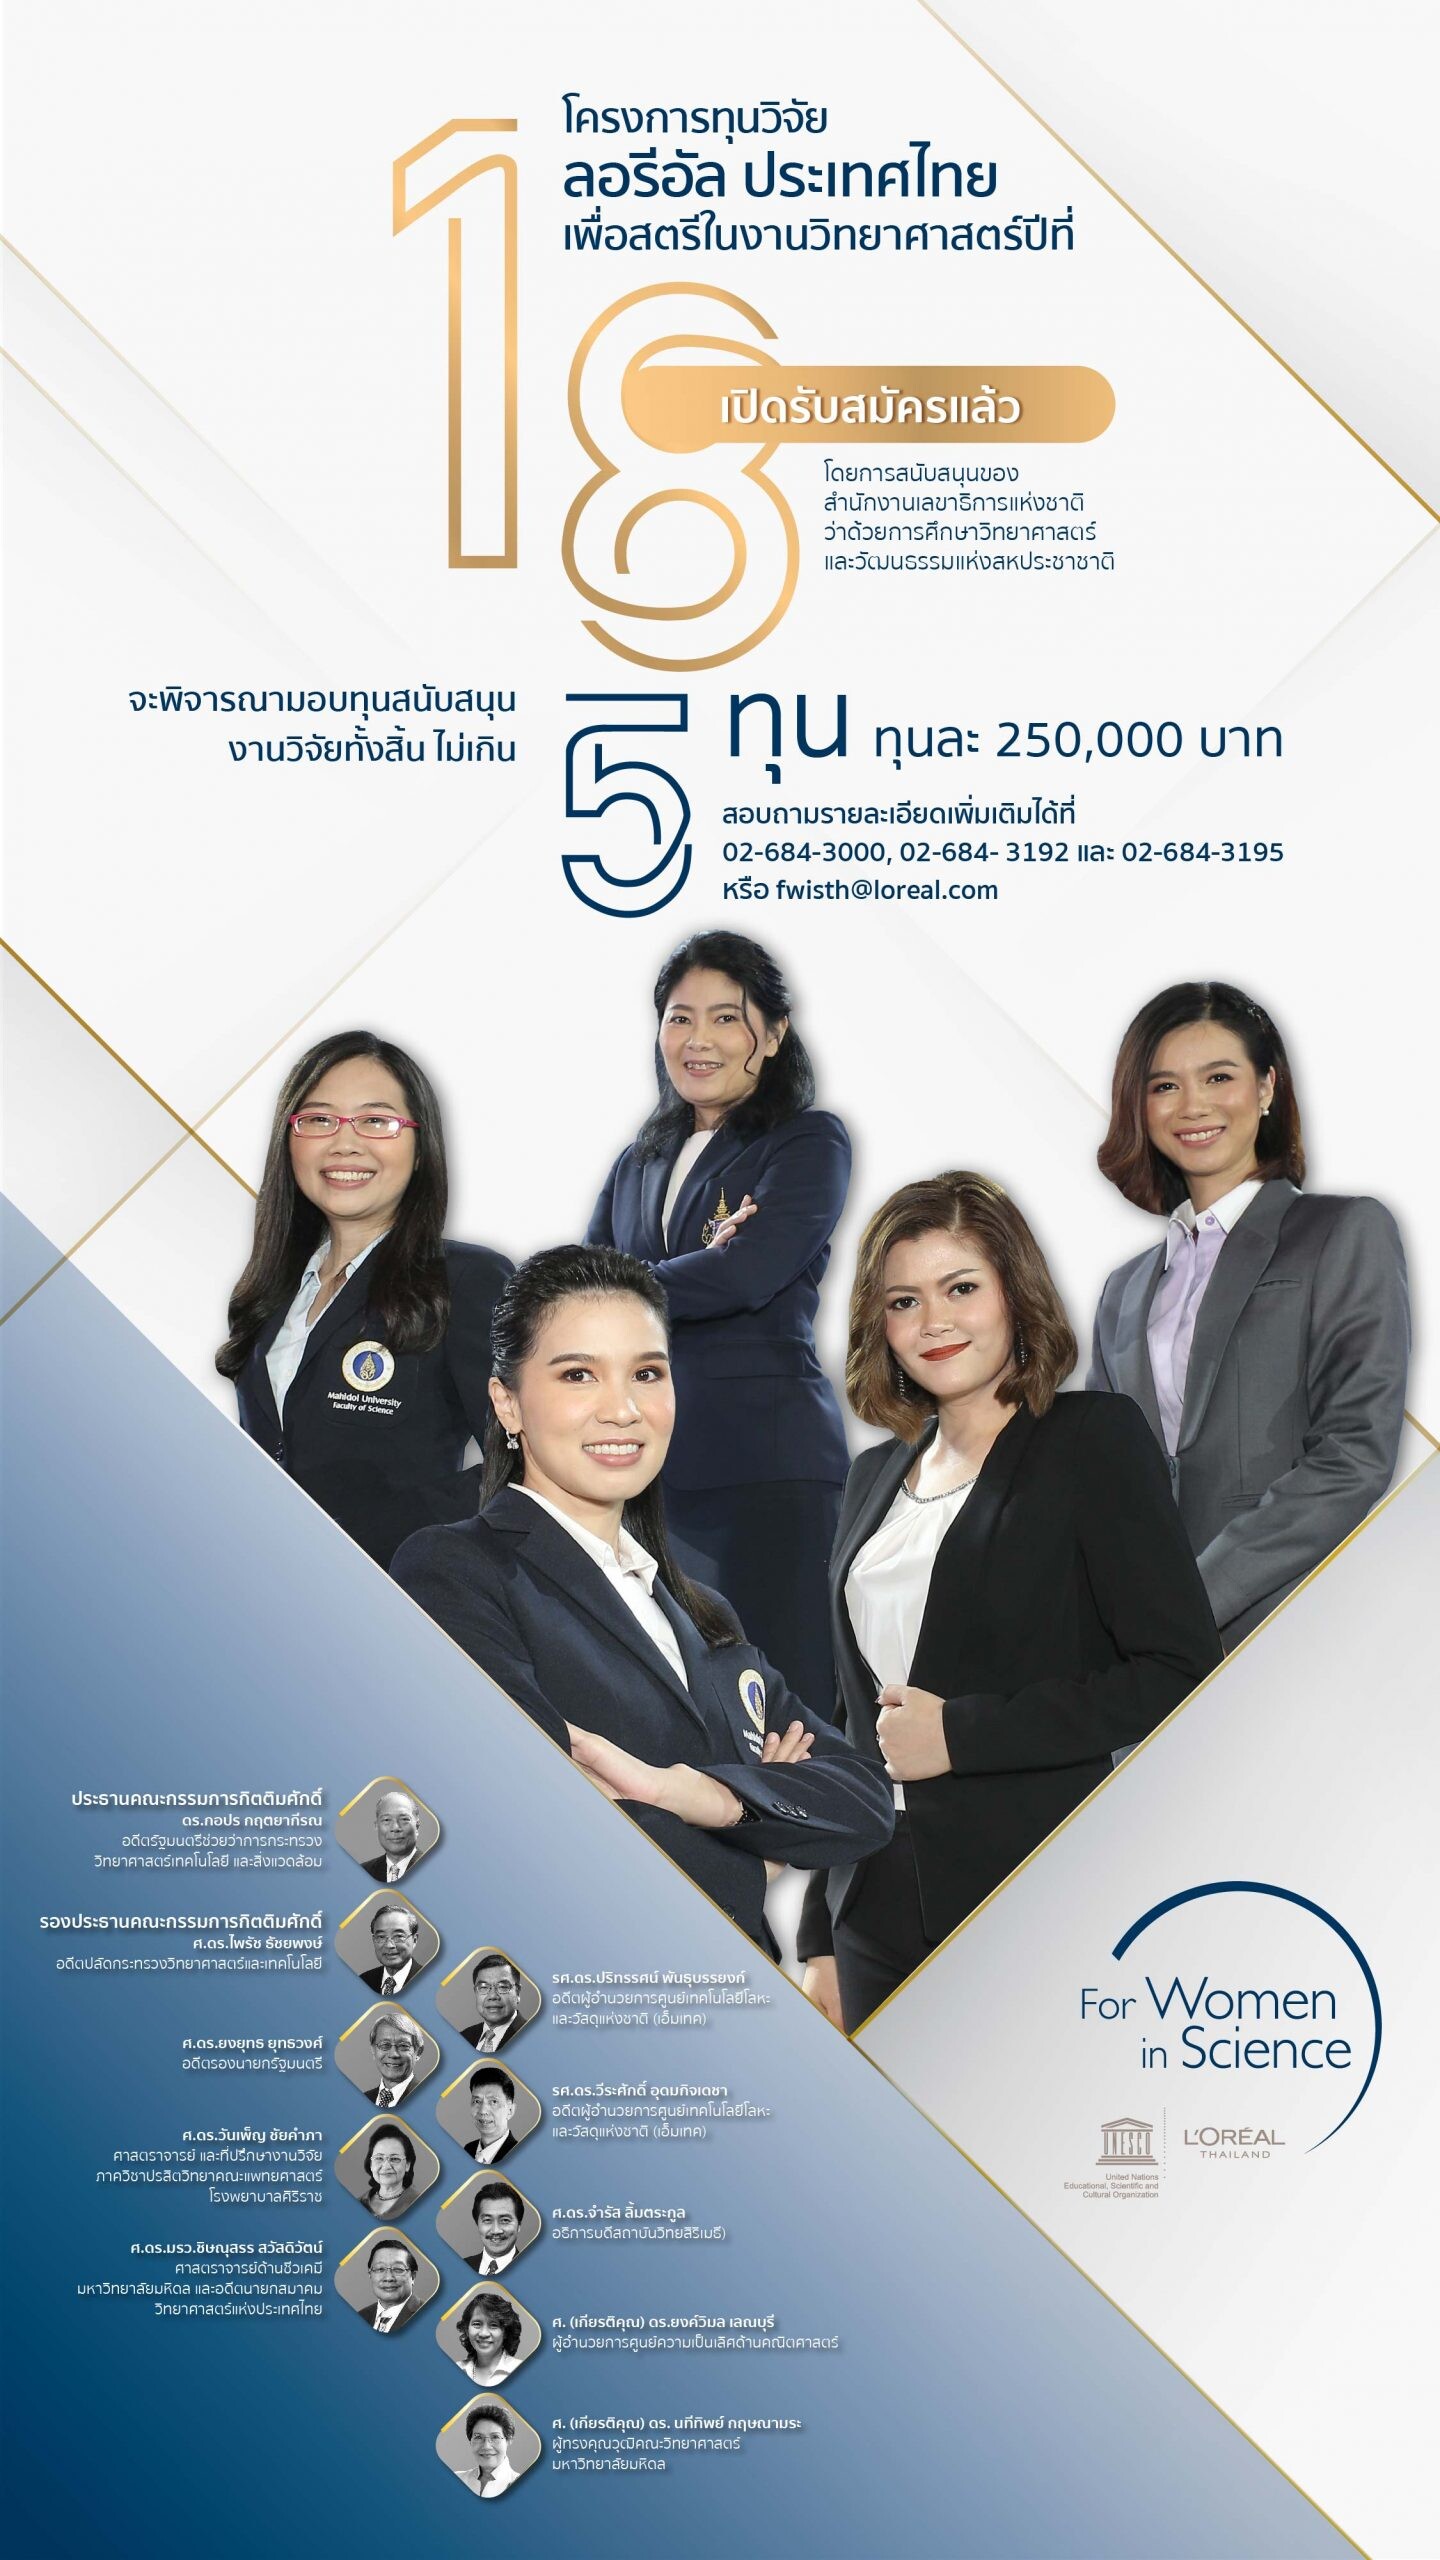 ลอรีอัล เปิดรับสมัครชิงทุนวิจัย “เพื่อสตรีในงานวิทยาศาสตร์” ครั้งที่ 18 ส่งเสริมนักวิทยาศาสตร์สตรีไทยต่อเนื่อง แม้ในสถานการณ์โควิด-19